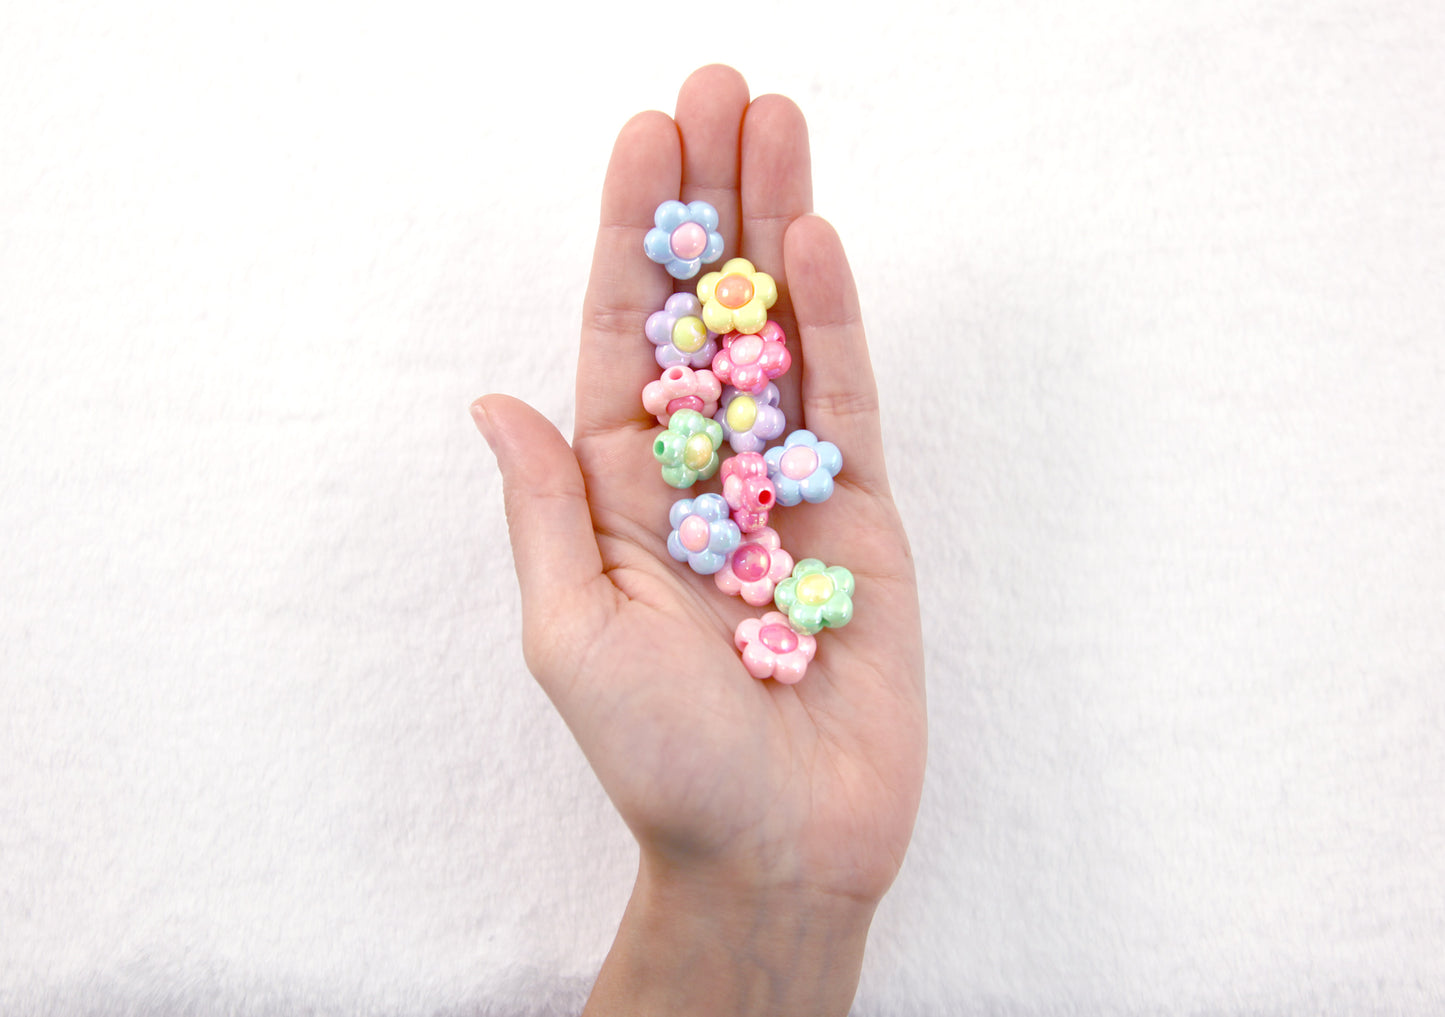 Flower Beads - 16mm Pastel Amazing AB Acrylic Flower Beads - Resin Flower Beads - 18 pc set